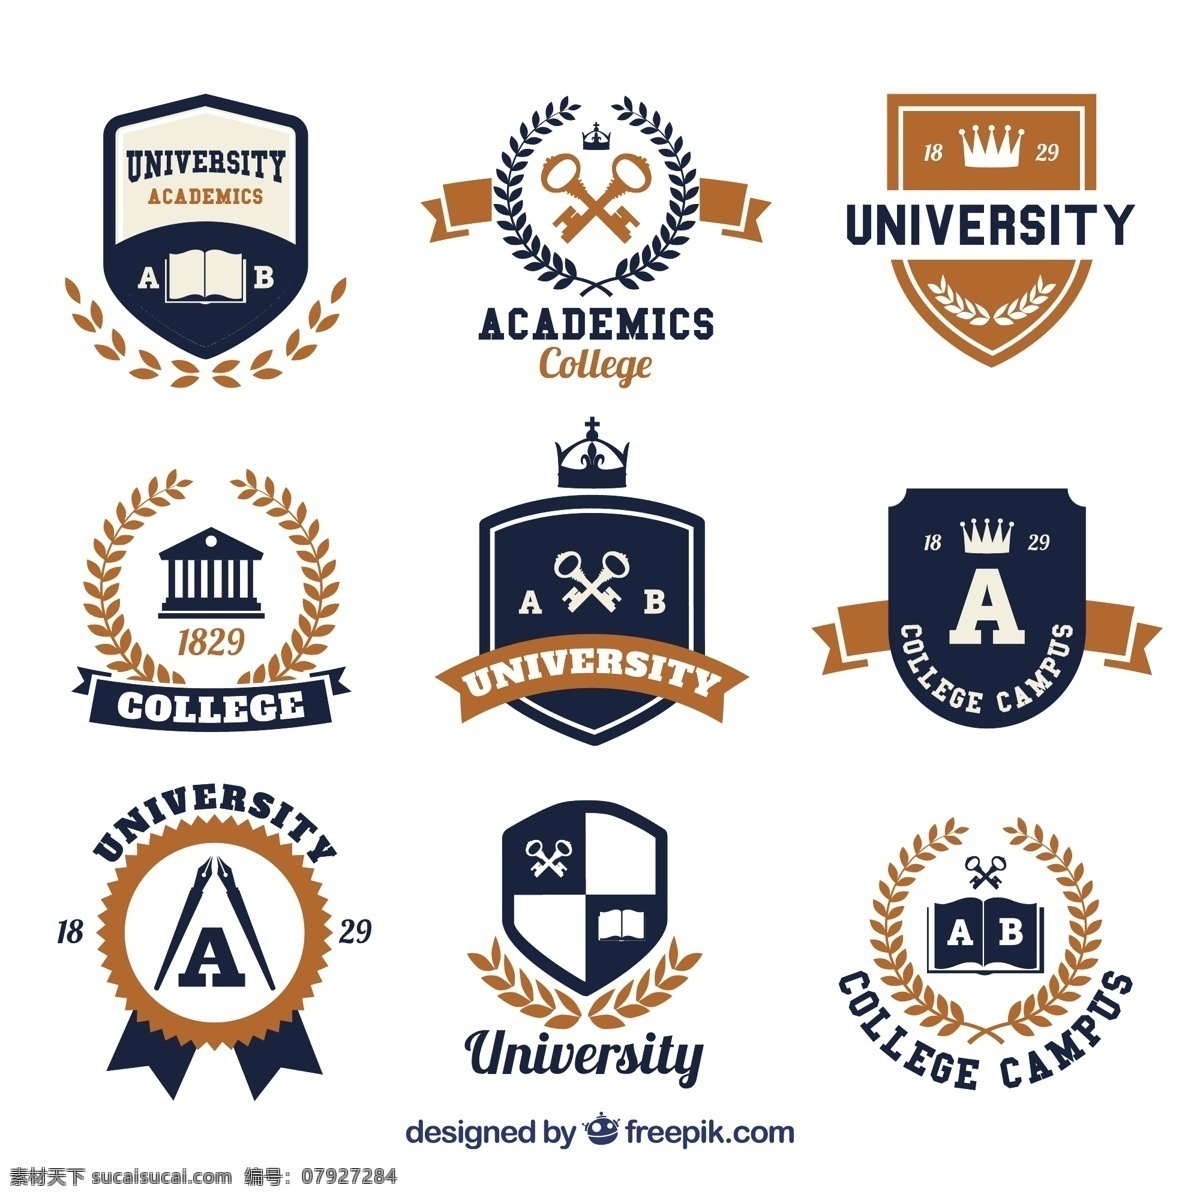 高校 标志 选择 学校 标签 书 徽章 教育 邮票 学生 科学 铅笔 袋子 印章 公司 学习 大学 品牌 会徽